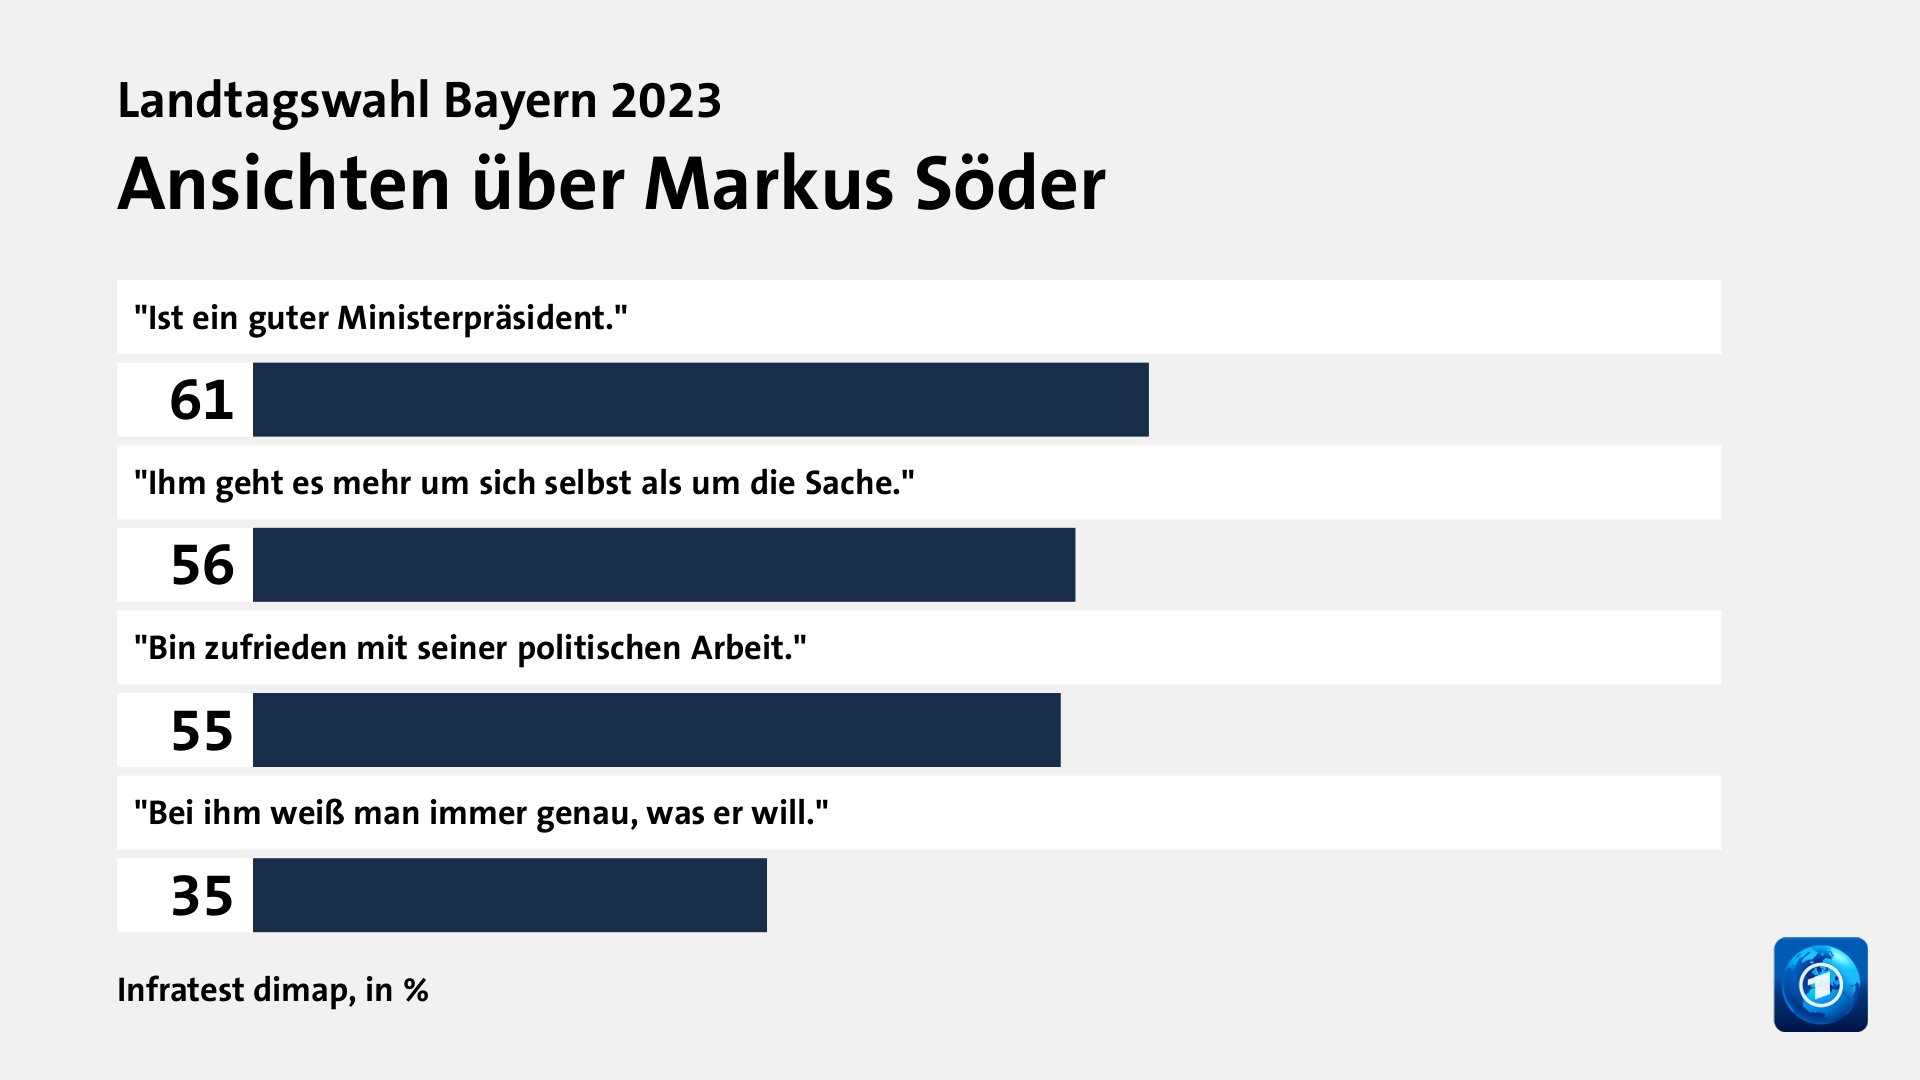 Ansichten über Markus Söder, in %: 